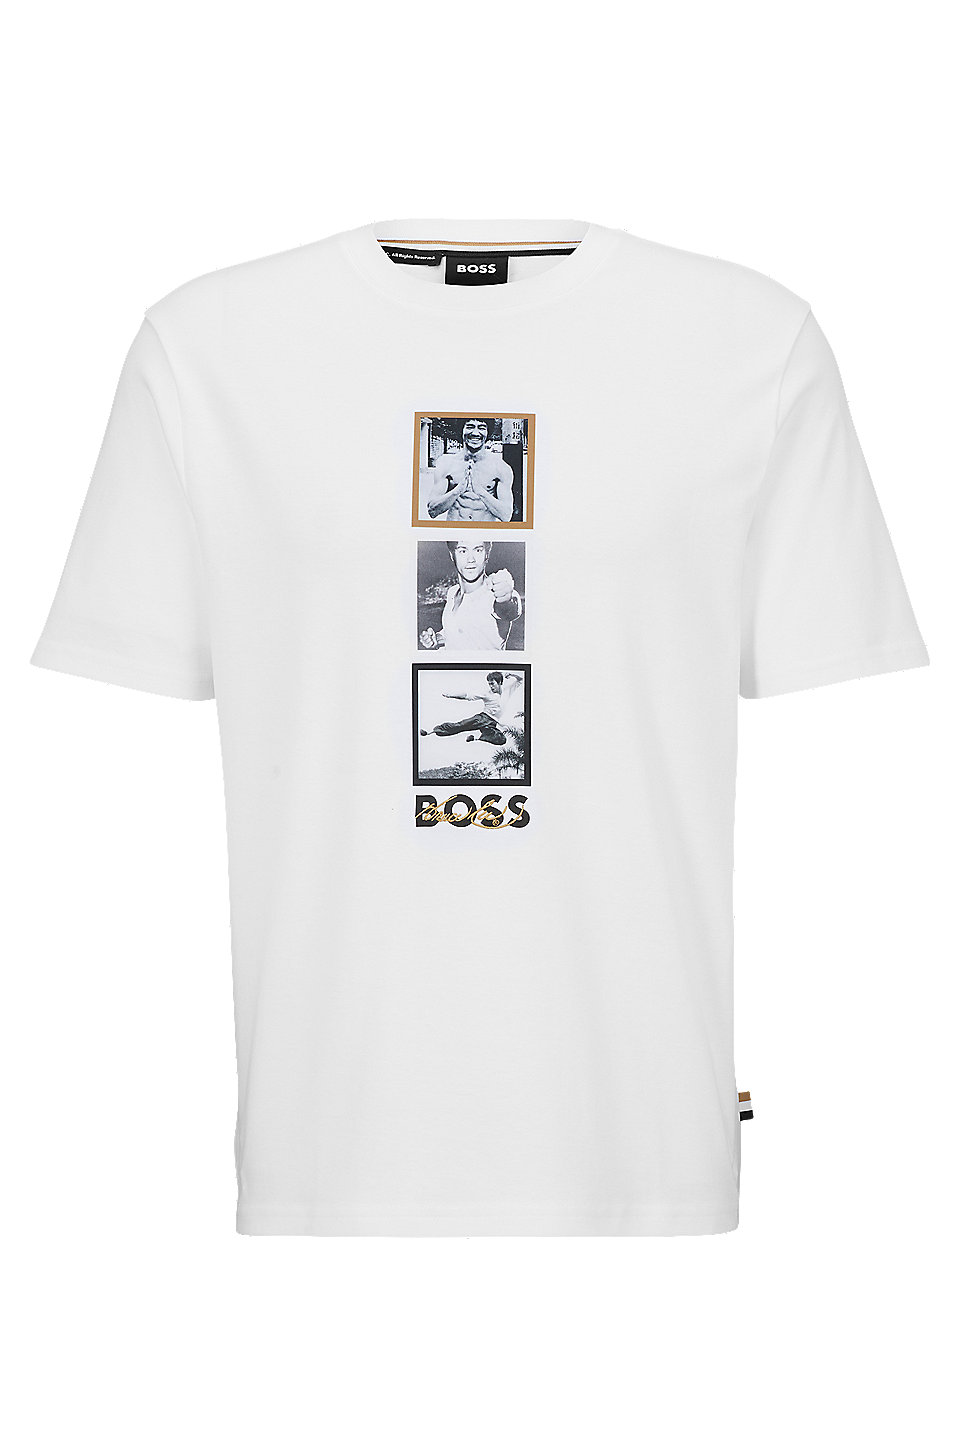 BOSS - BOSS x Bruce Lee ジェンダーニュートラル Tシャツ スペシャルアートワーク